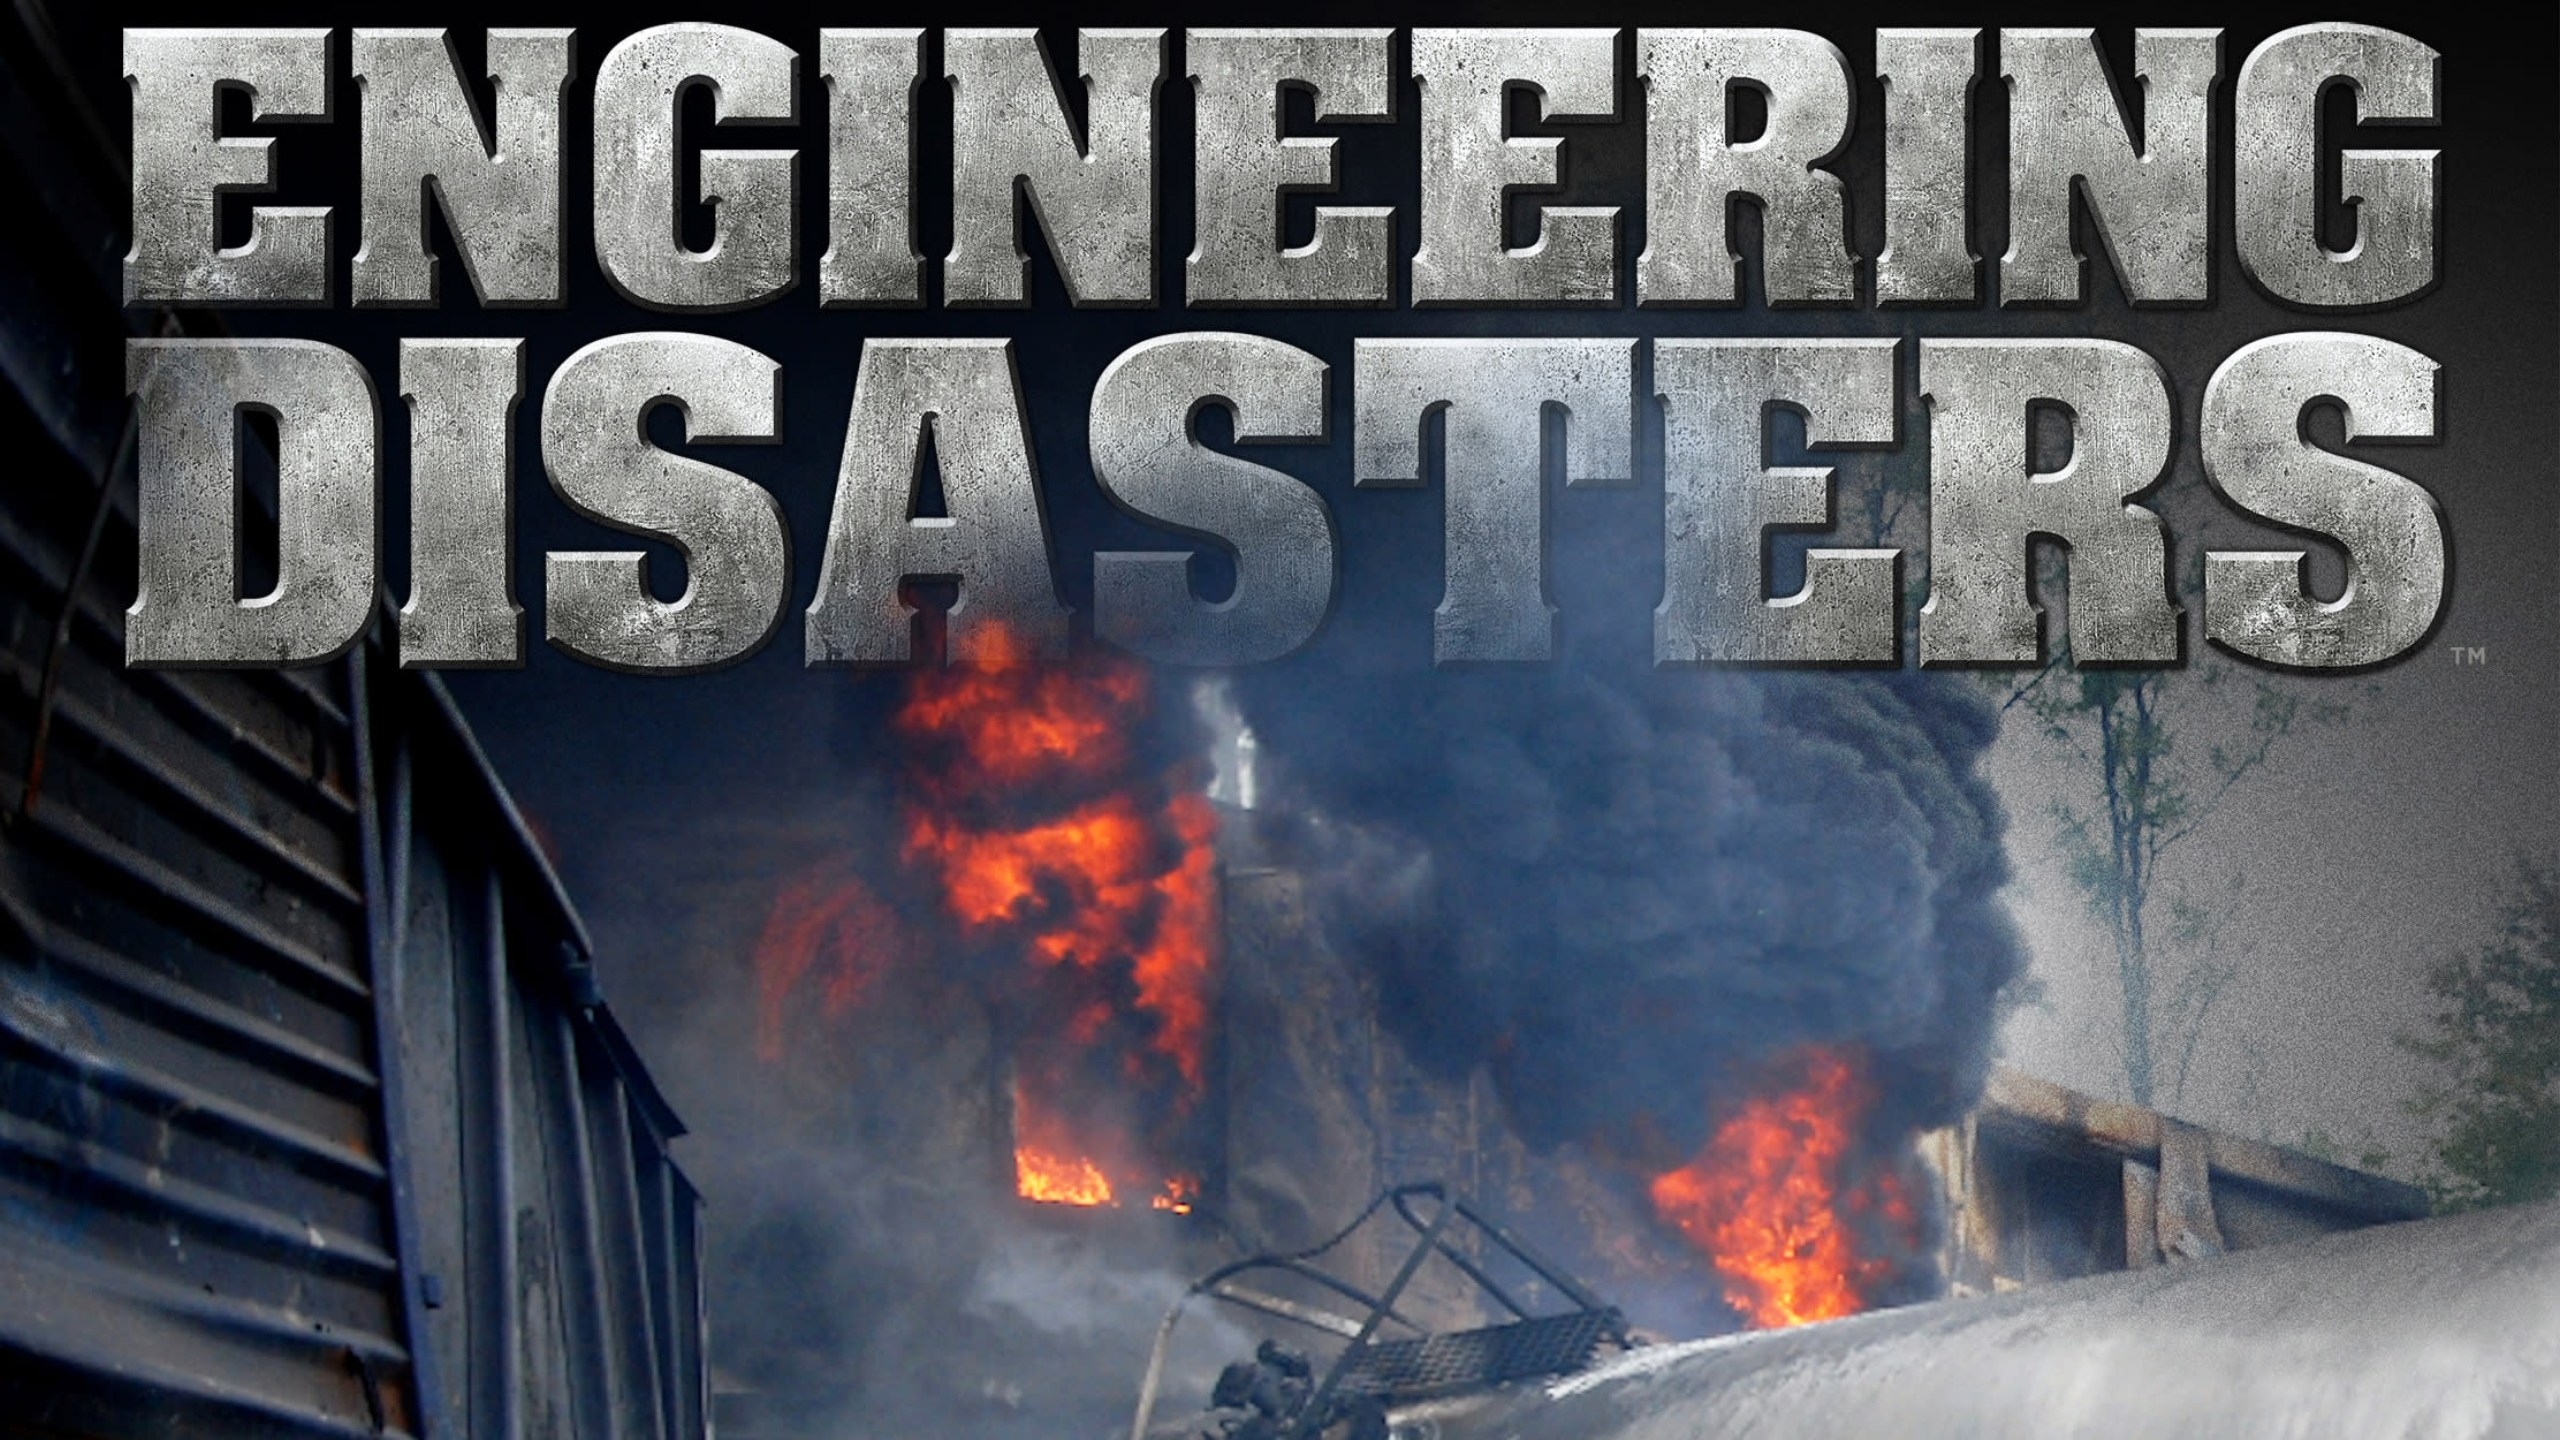 Engineering Disasters